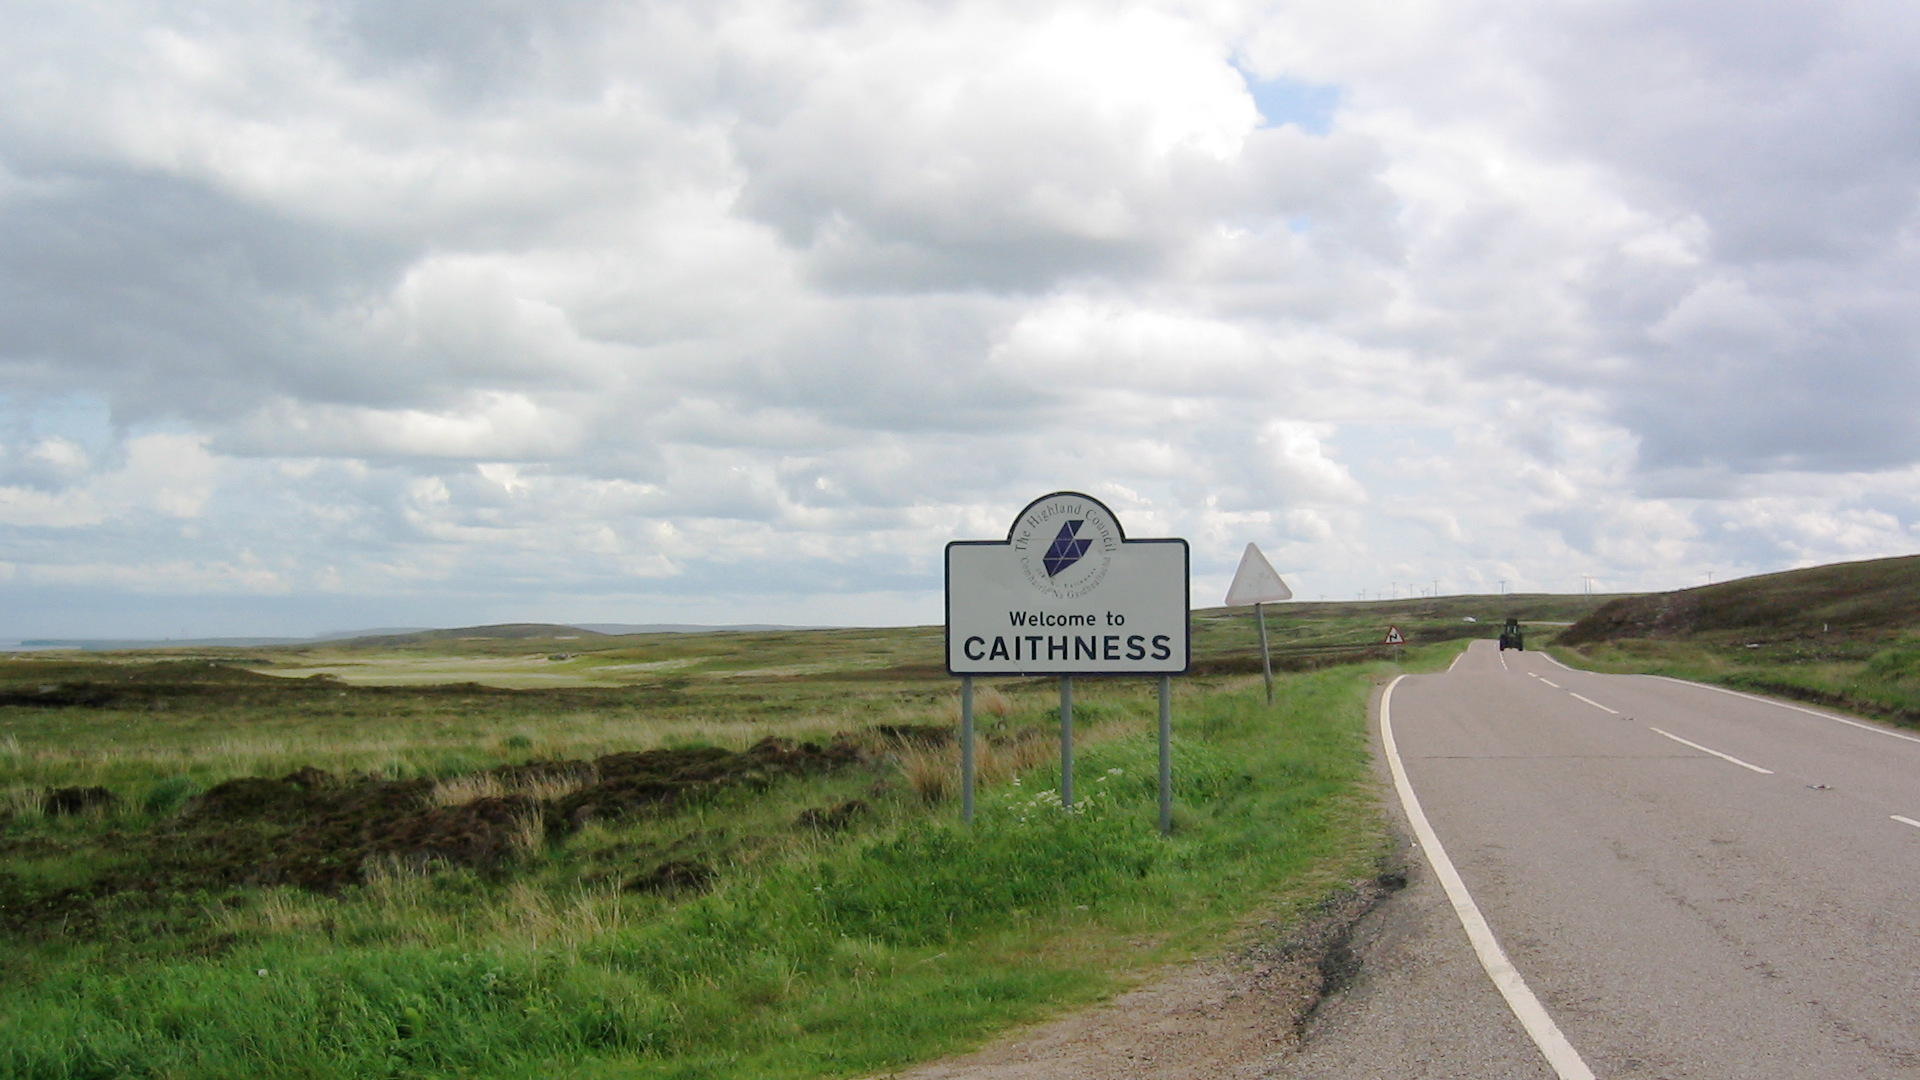 Caithness - a bleak, treeless land.